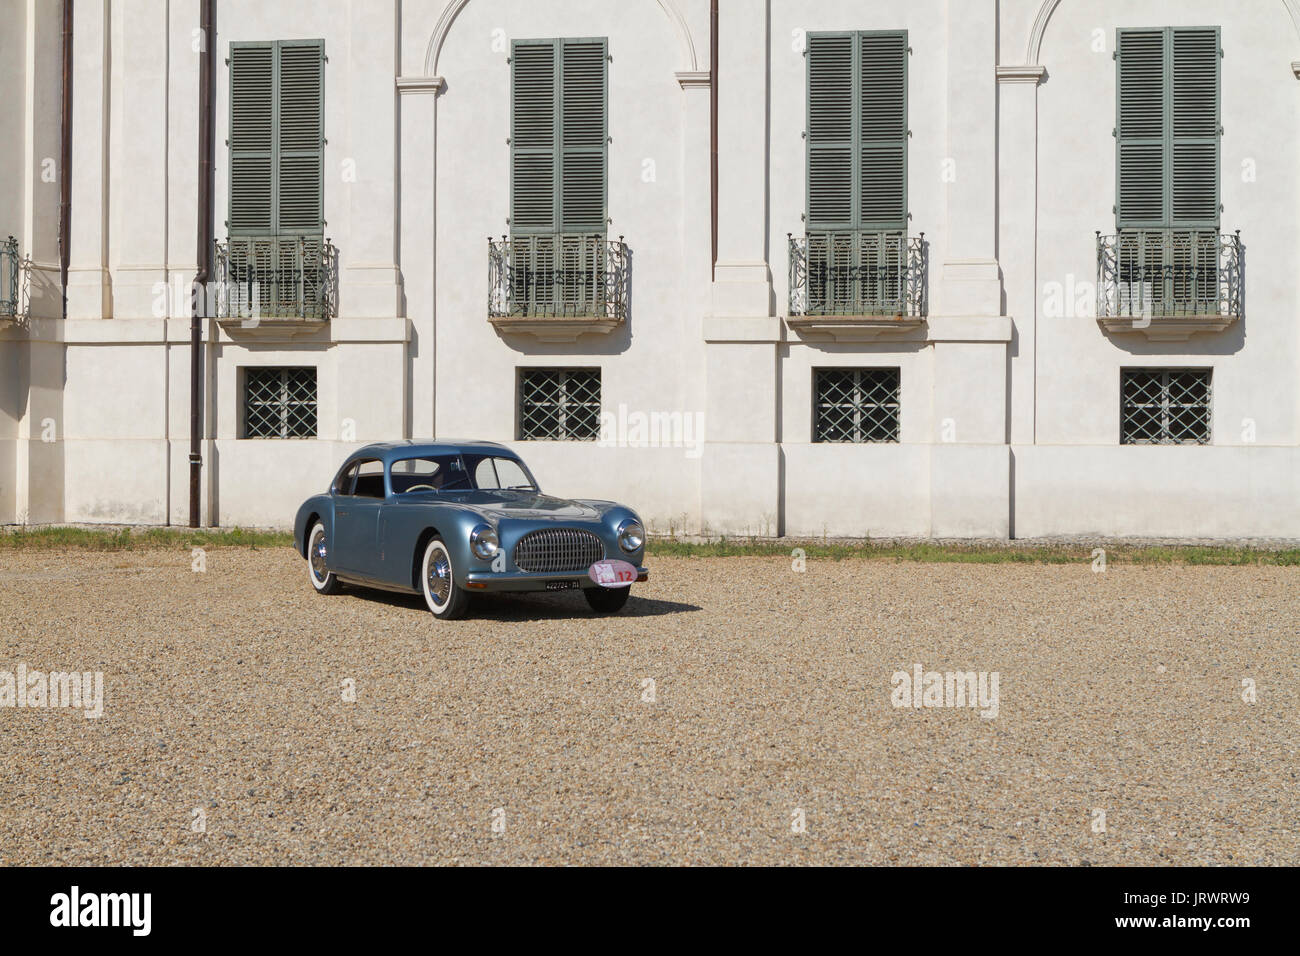 Un 1947 Cisitalia 202 C en avant du château de Stupinigi. Voitures anciennes et des voitures en exposition à Turin pendant Parco Valentino car show. Banque D'Images